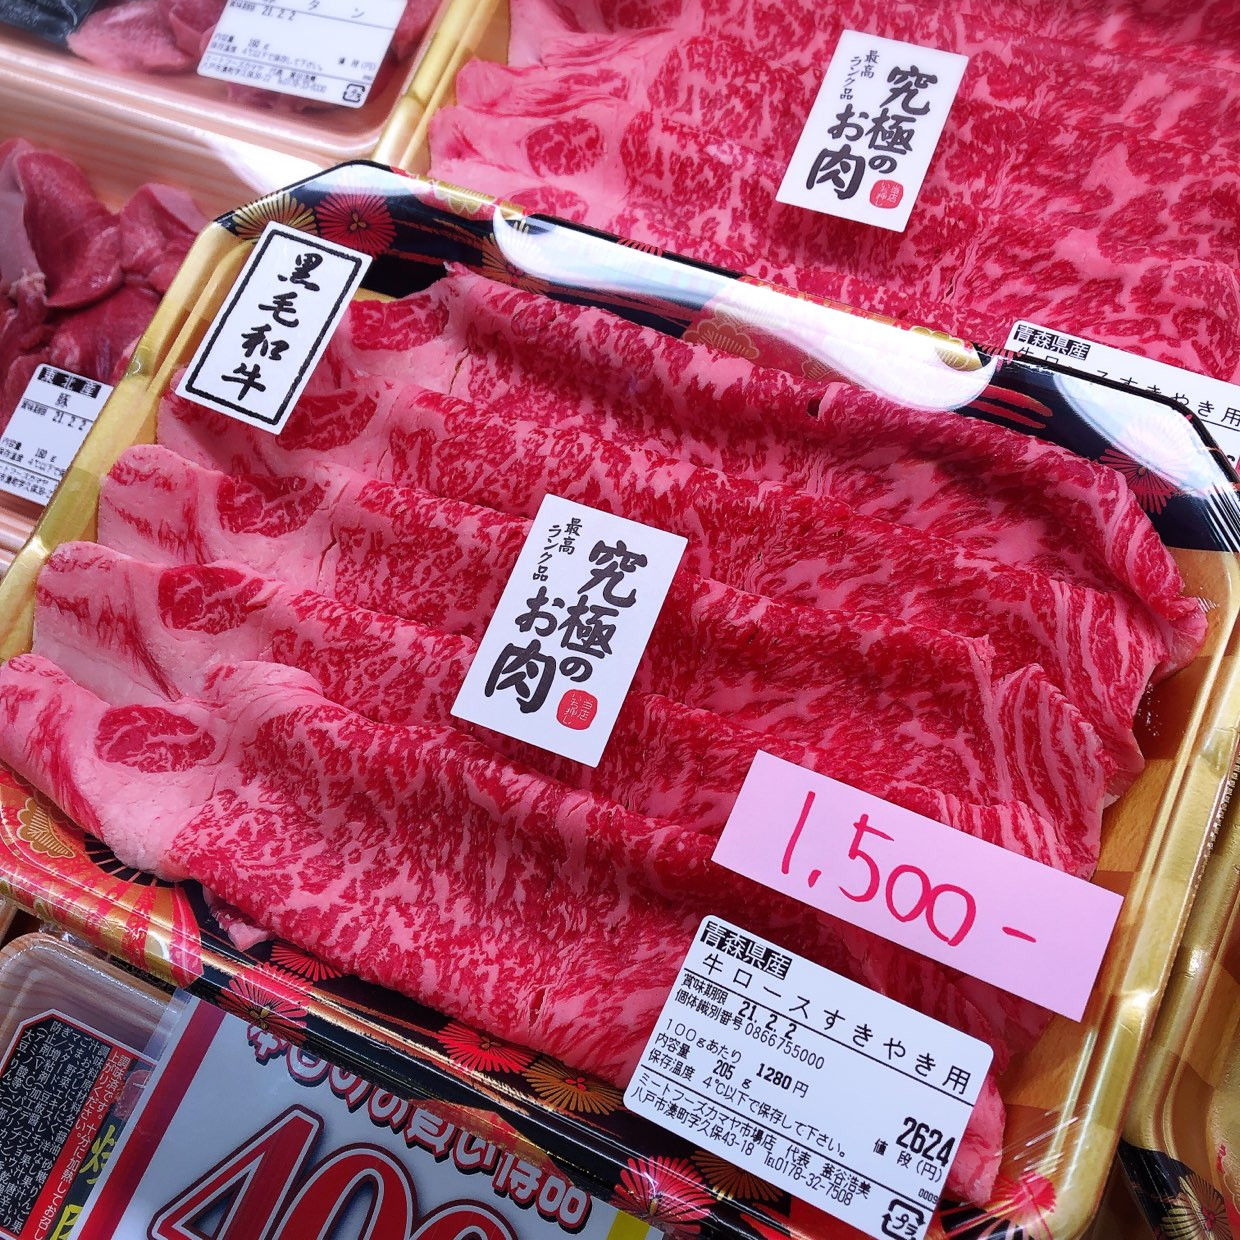 本日は青森県産黒毛和牛ロースすき焼き用がお買得です。